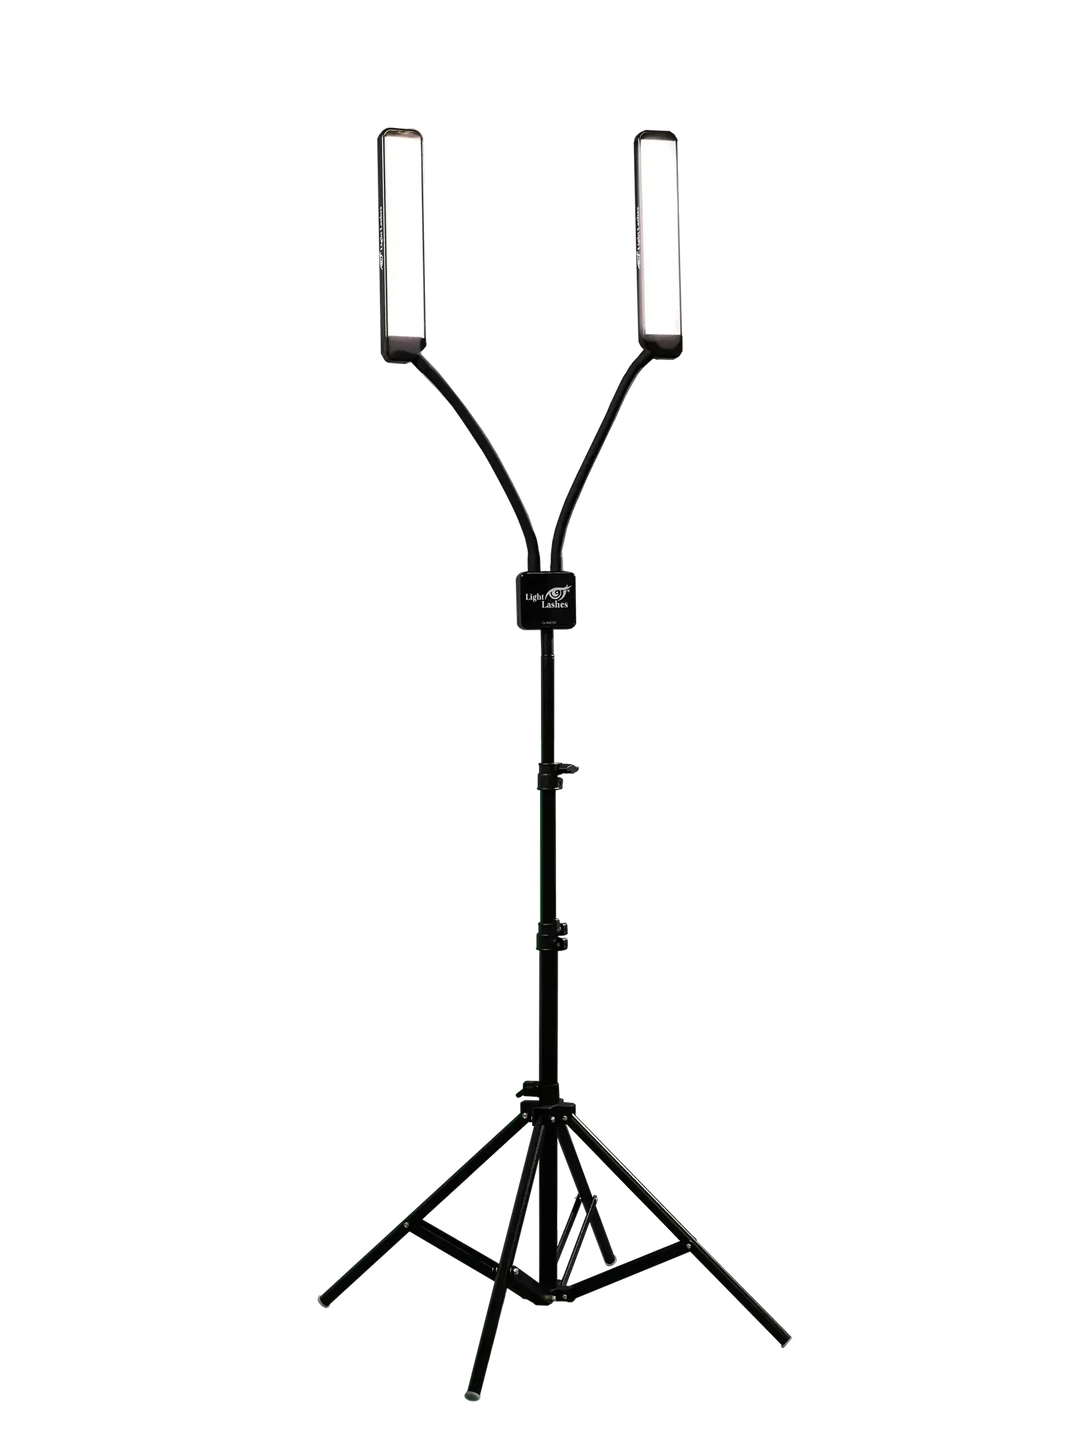 ЭЛИТ Х МАСТЕР | Персонализированная светодиодная лампа с двумя гибкими кронштейнами.